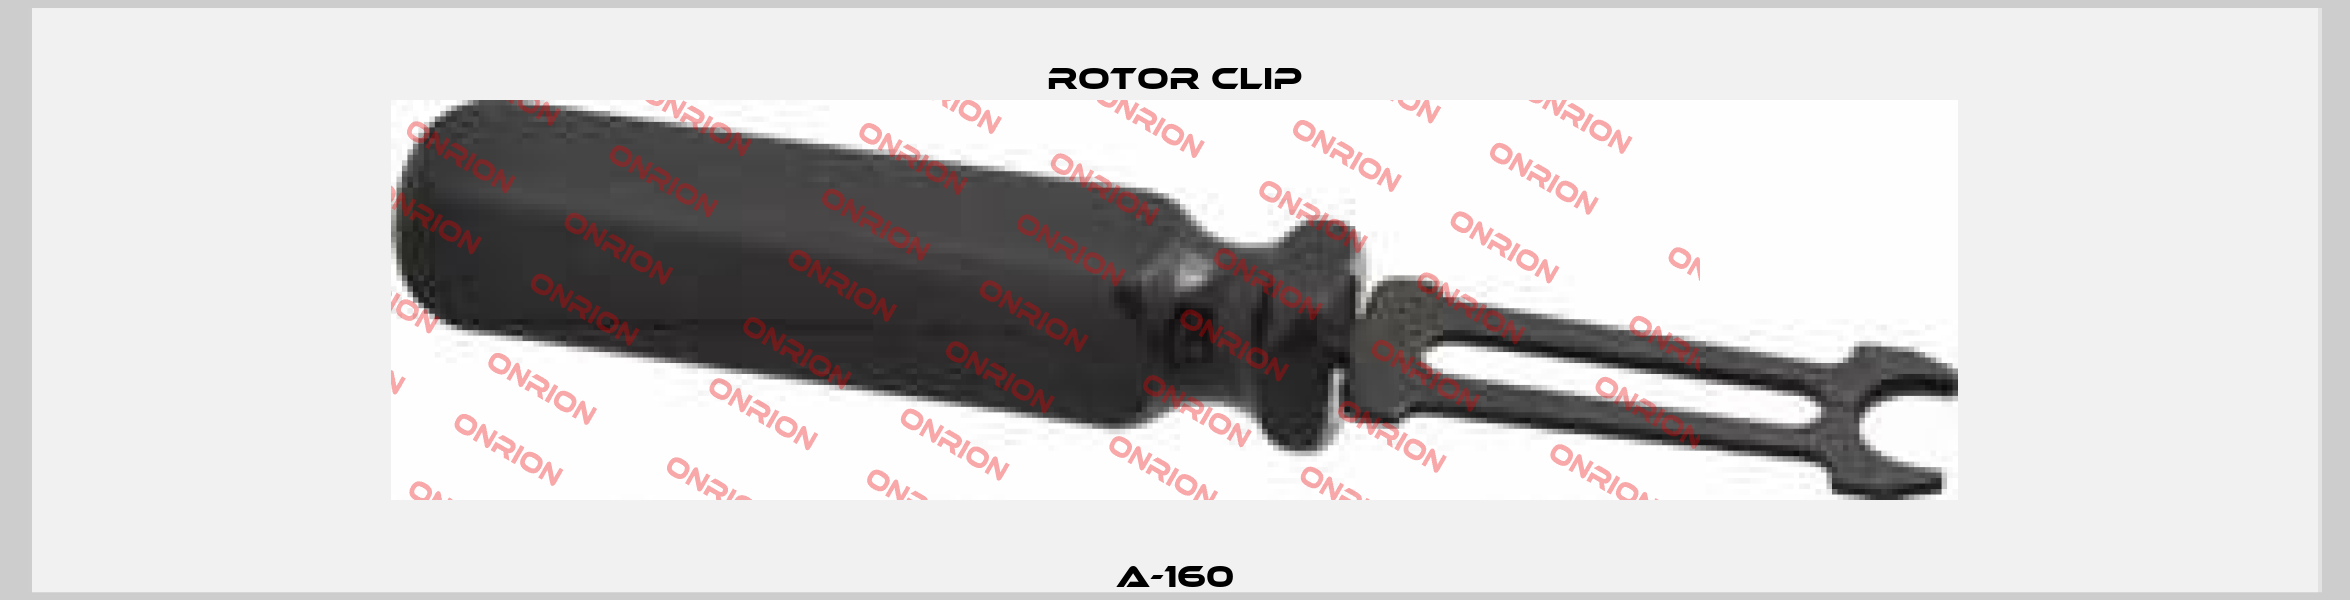 A-160 Rotor Clip